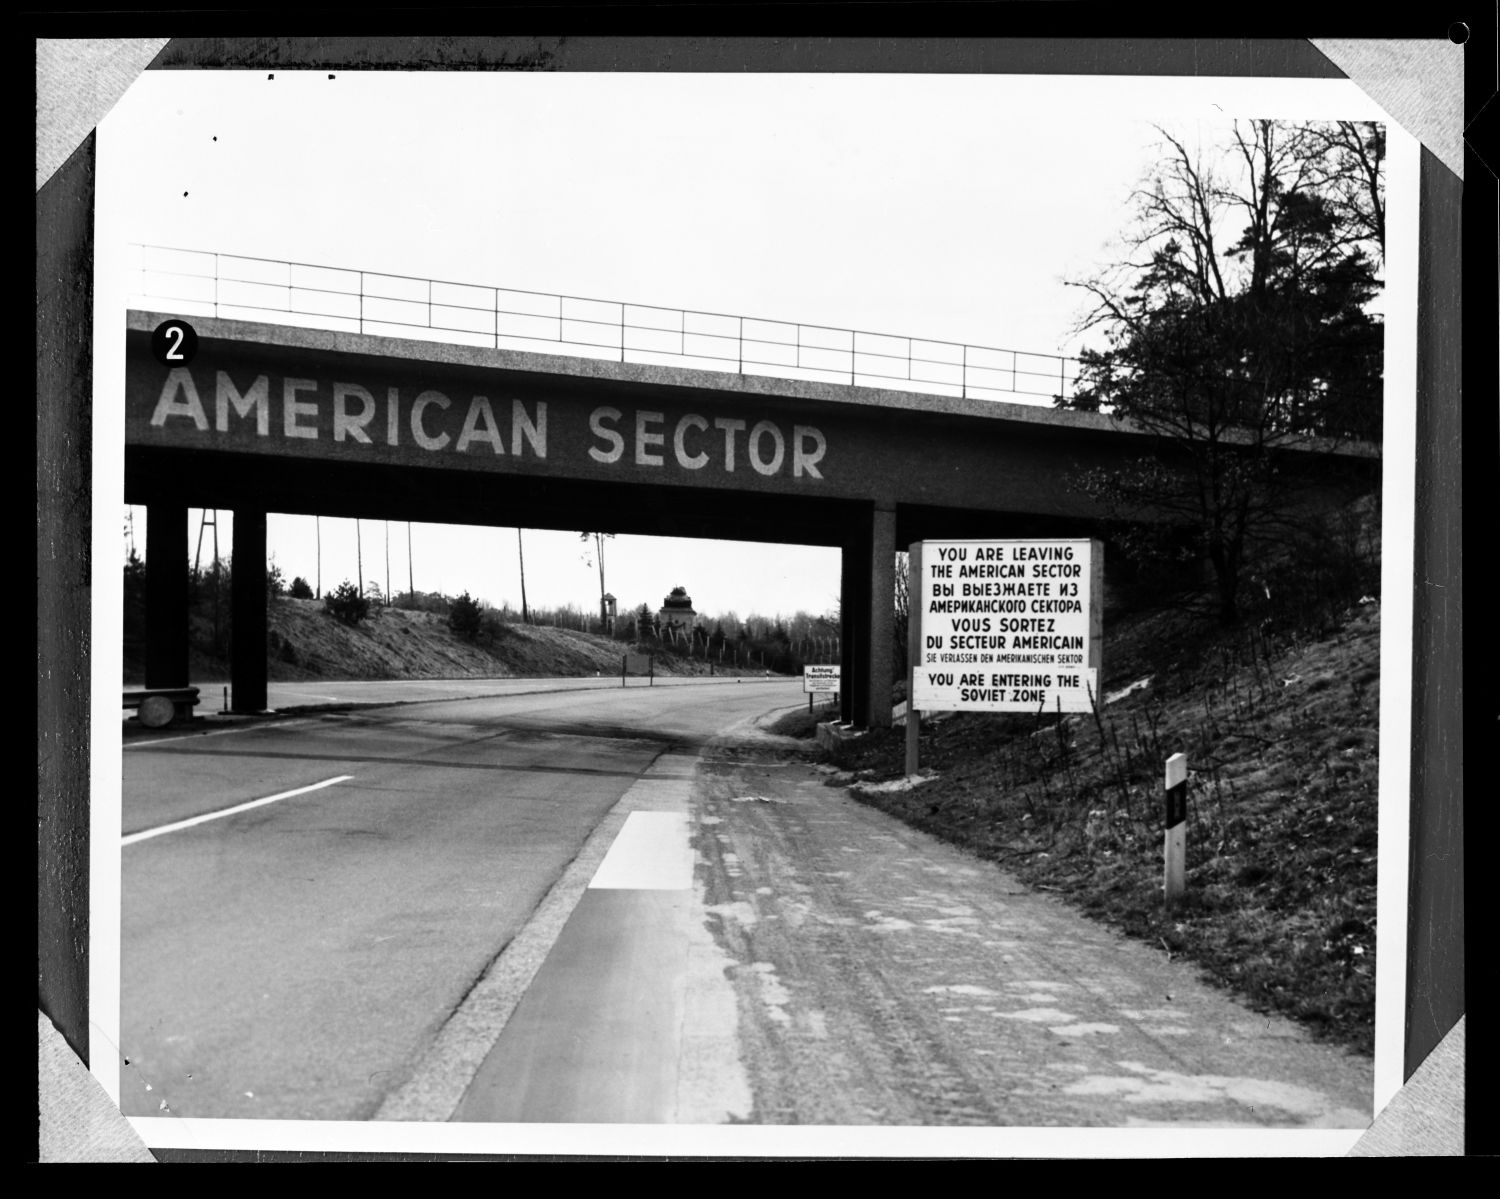 S/w-Fotografie: Brücke mit der Aufschrift American Sector an der Autobahn A 15 in Berlin-Wannsee